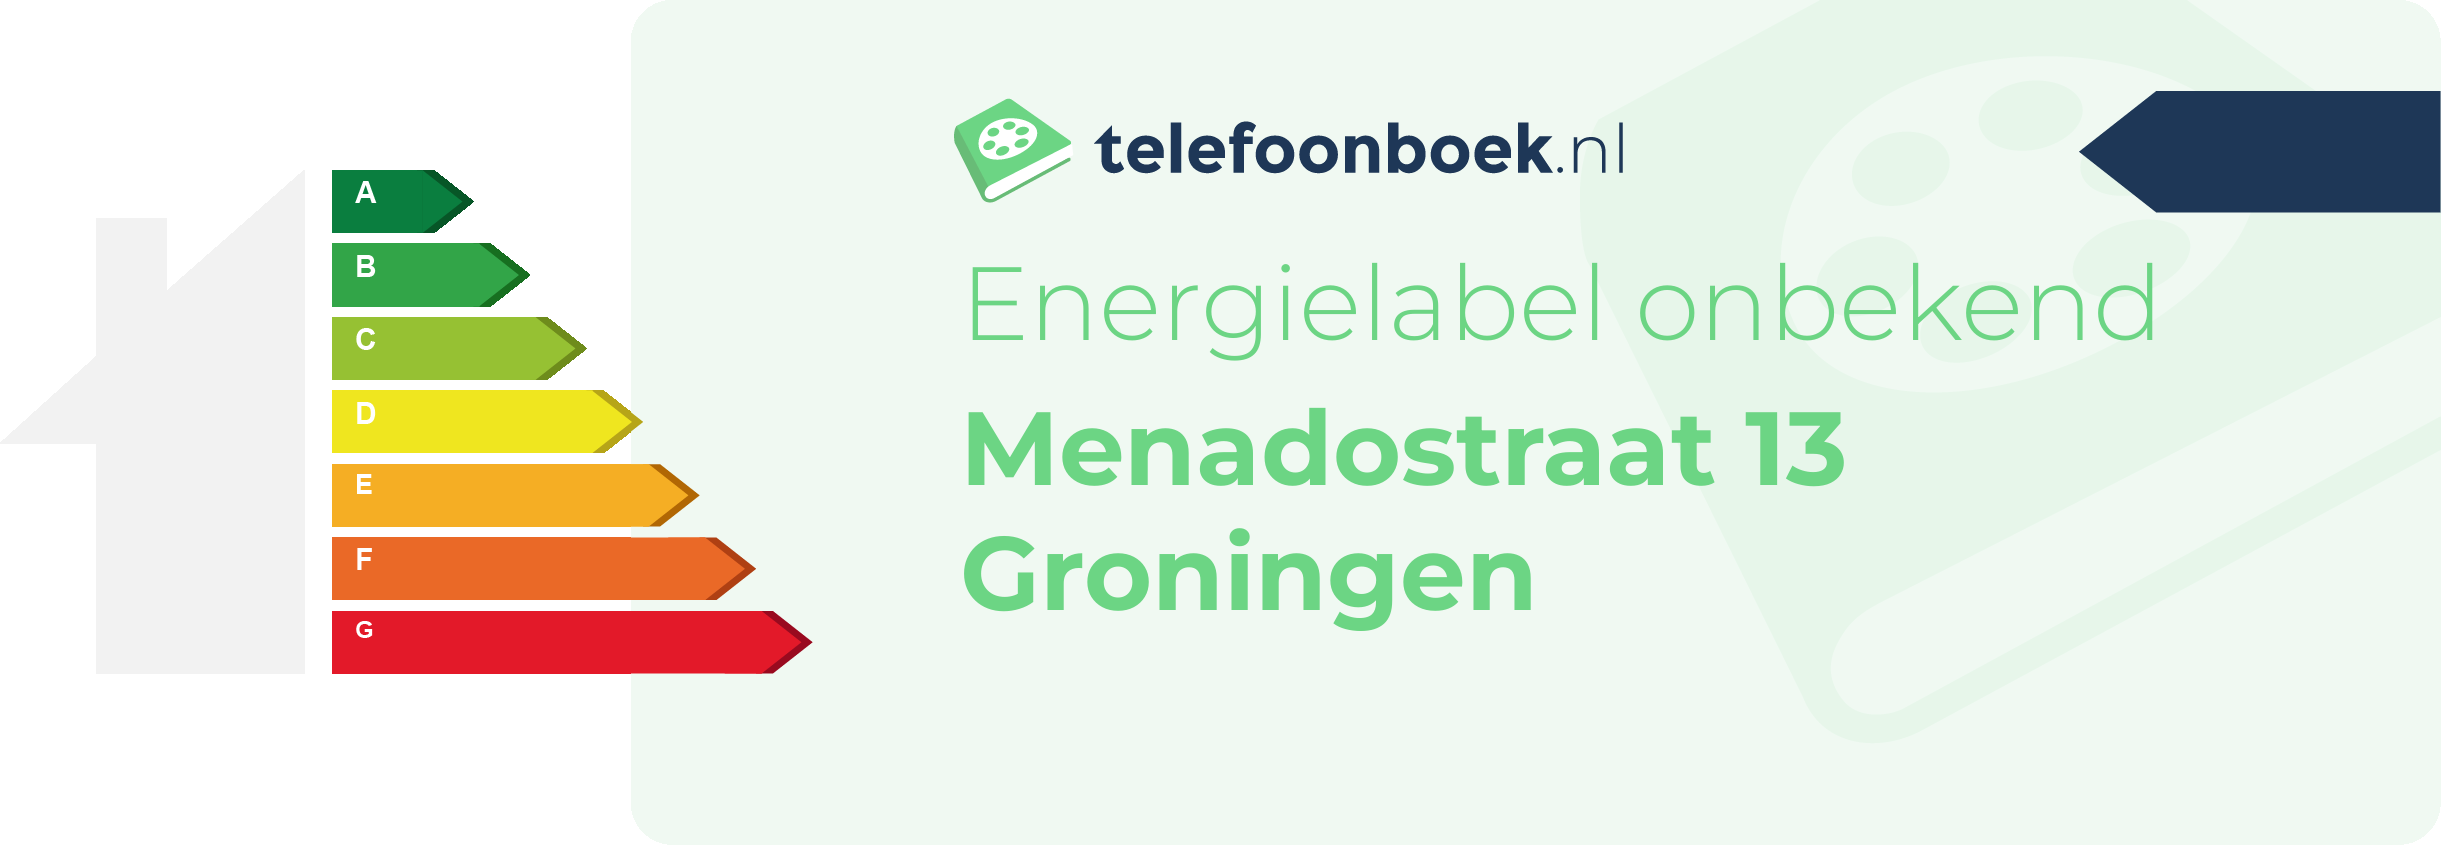 Energielabel Menadostraat 13 Groningen